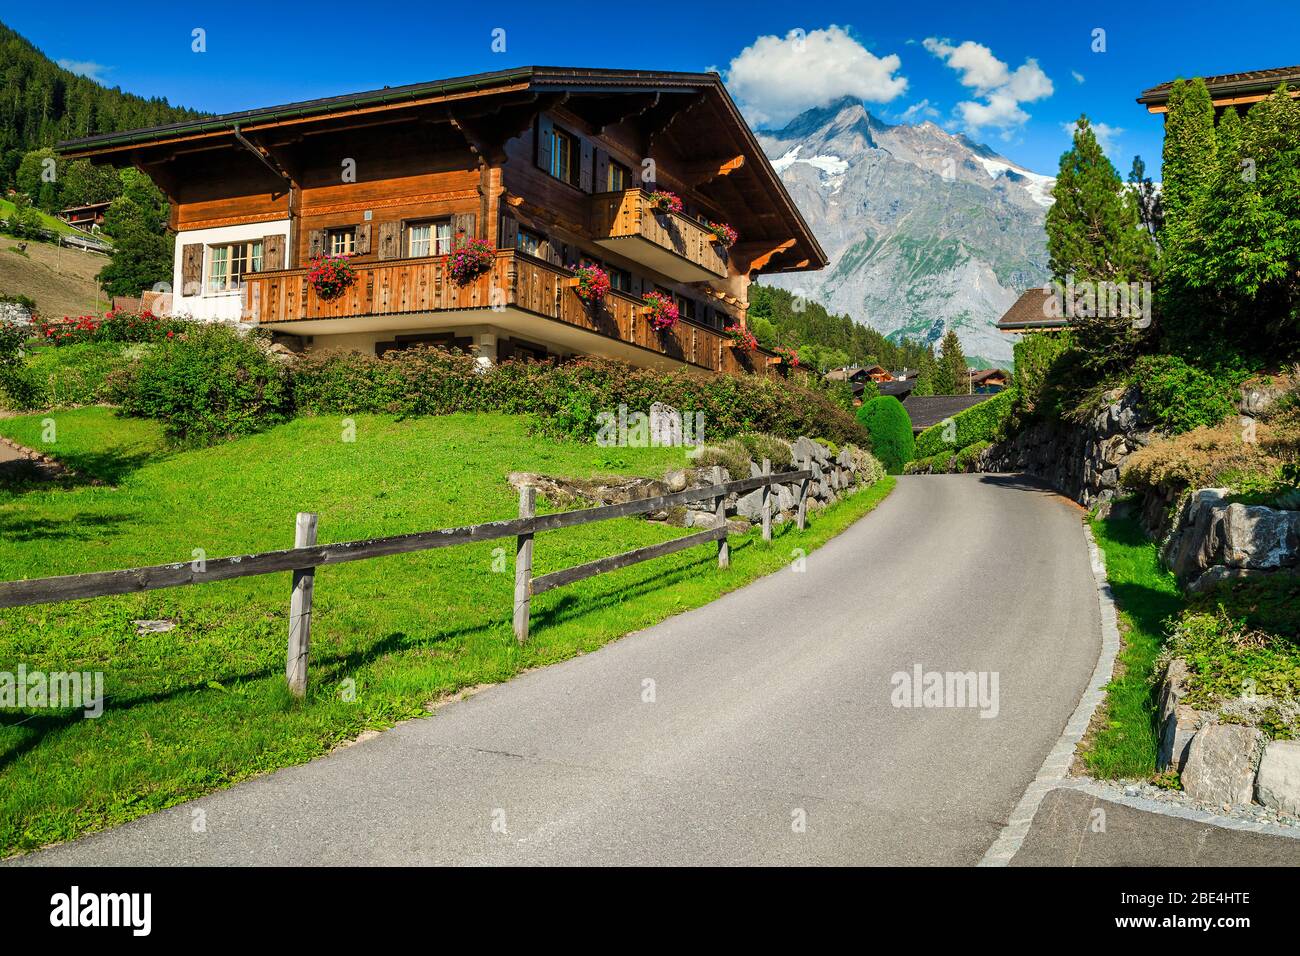 Vue sur la rue, avec des lodges en bois et des jardins ornementaux fleuris dans la station de montagne Grindelwald, Oberland bernois, Suisse, Europe Banque D'Images